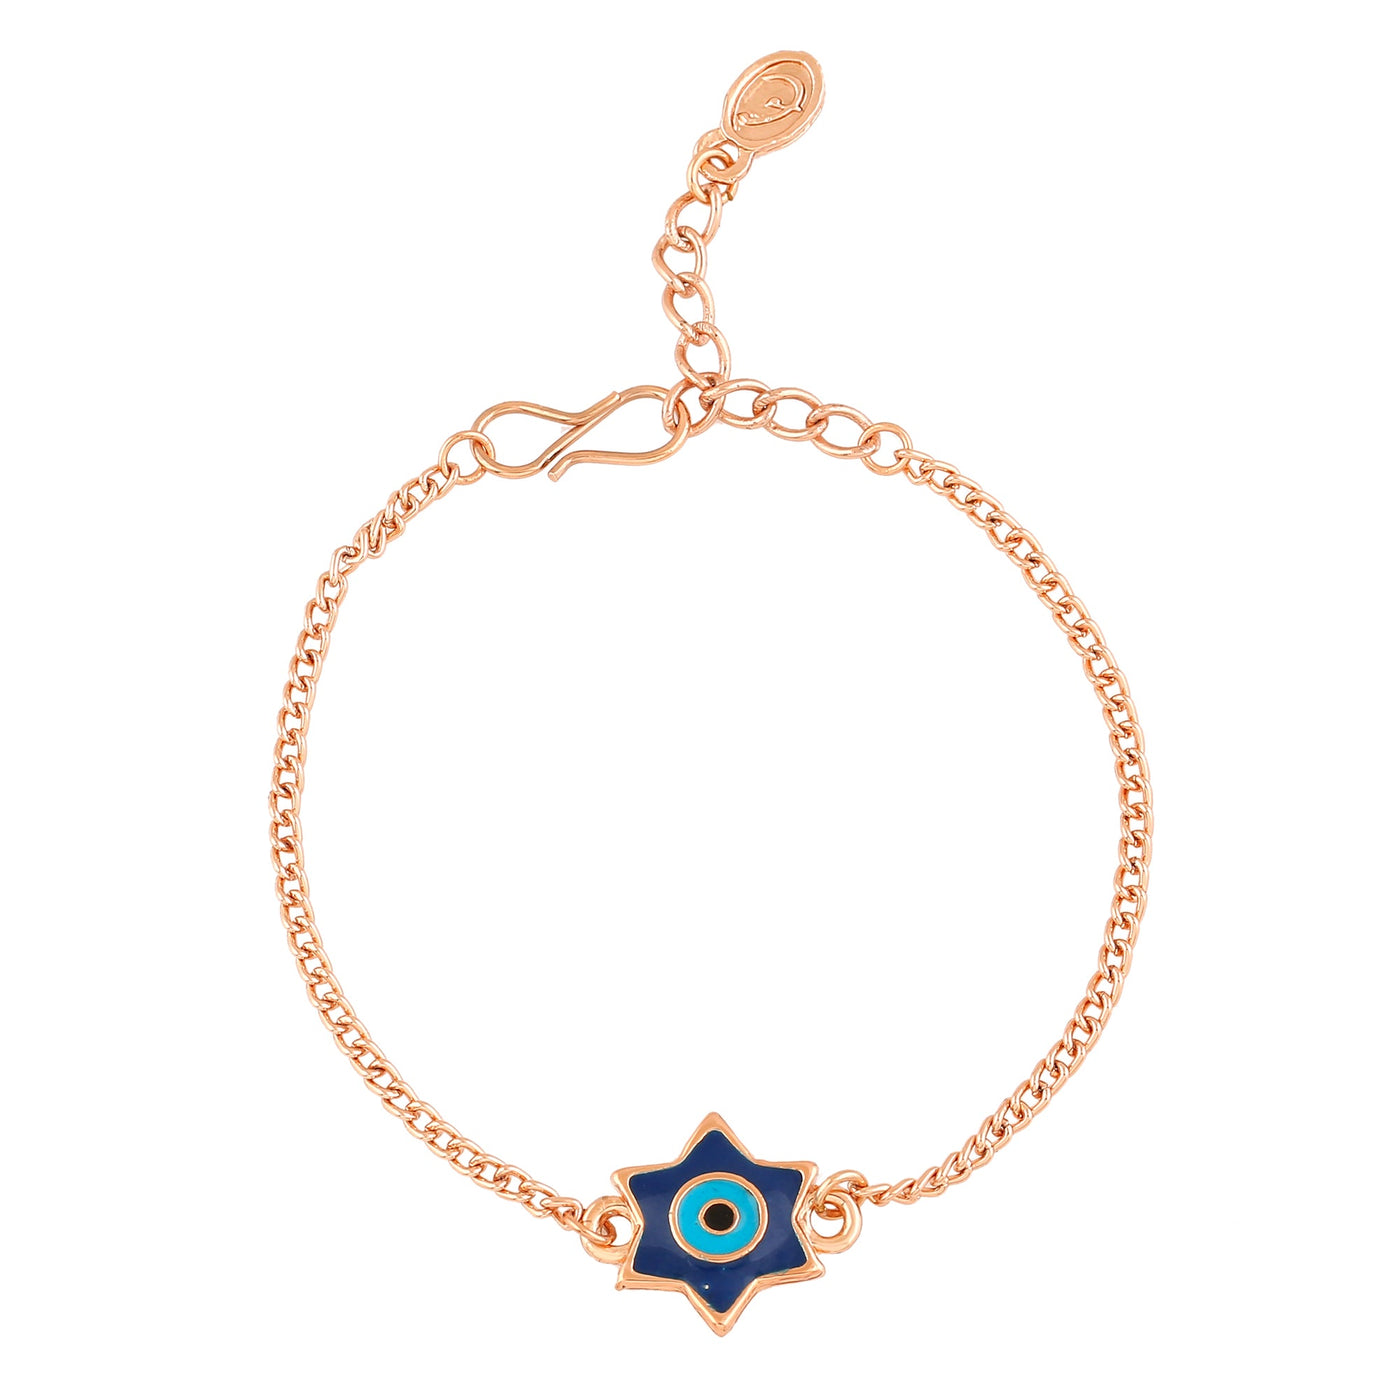 Estele Rose Gold Plated Elegant Star Design Evil Eye Navy Blue & Enamel Charm Bracelet